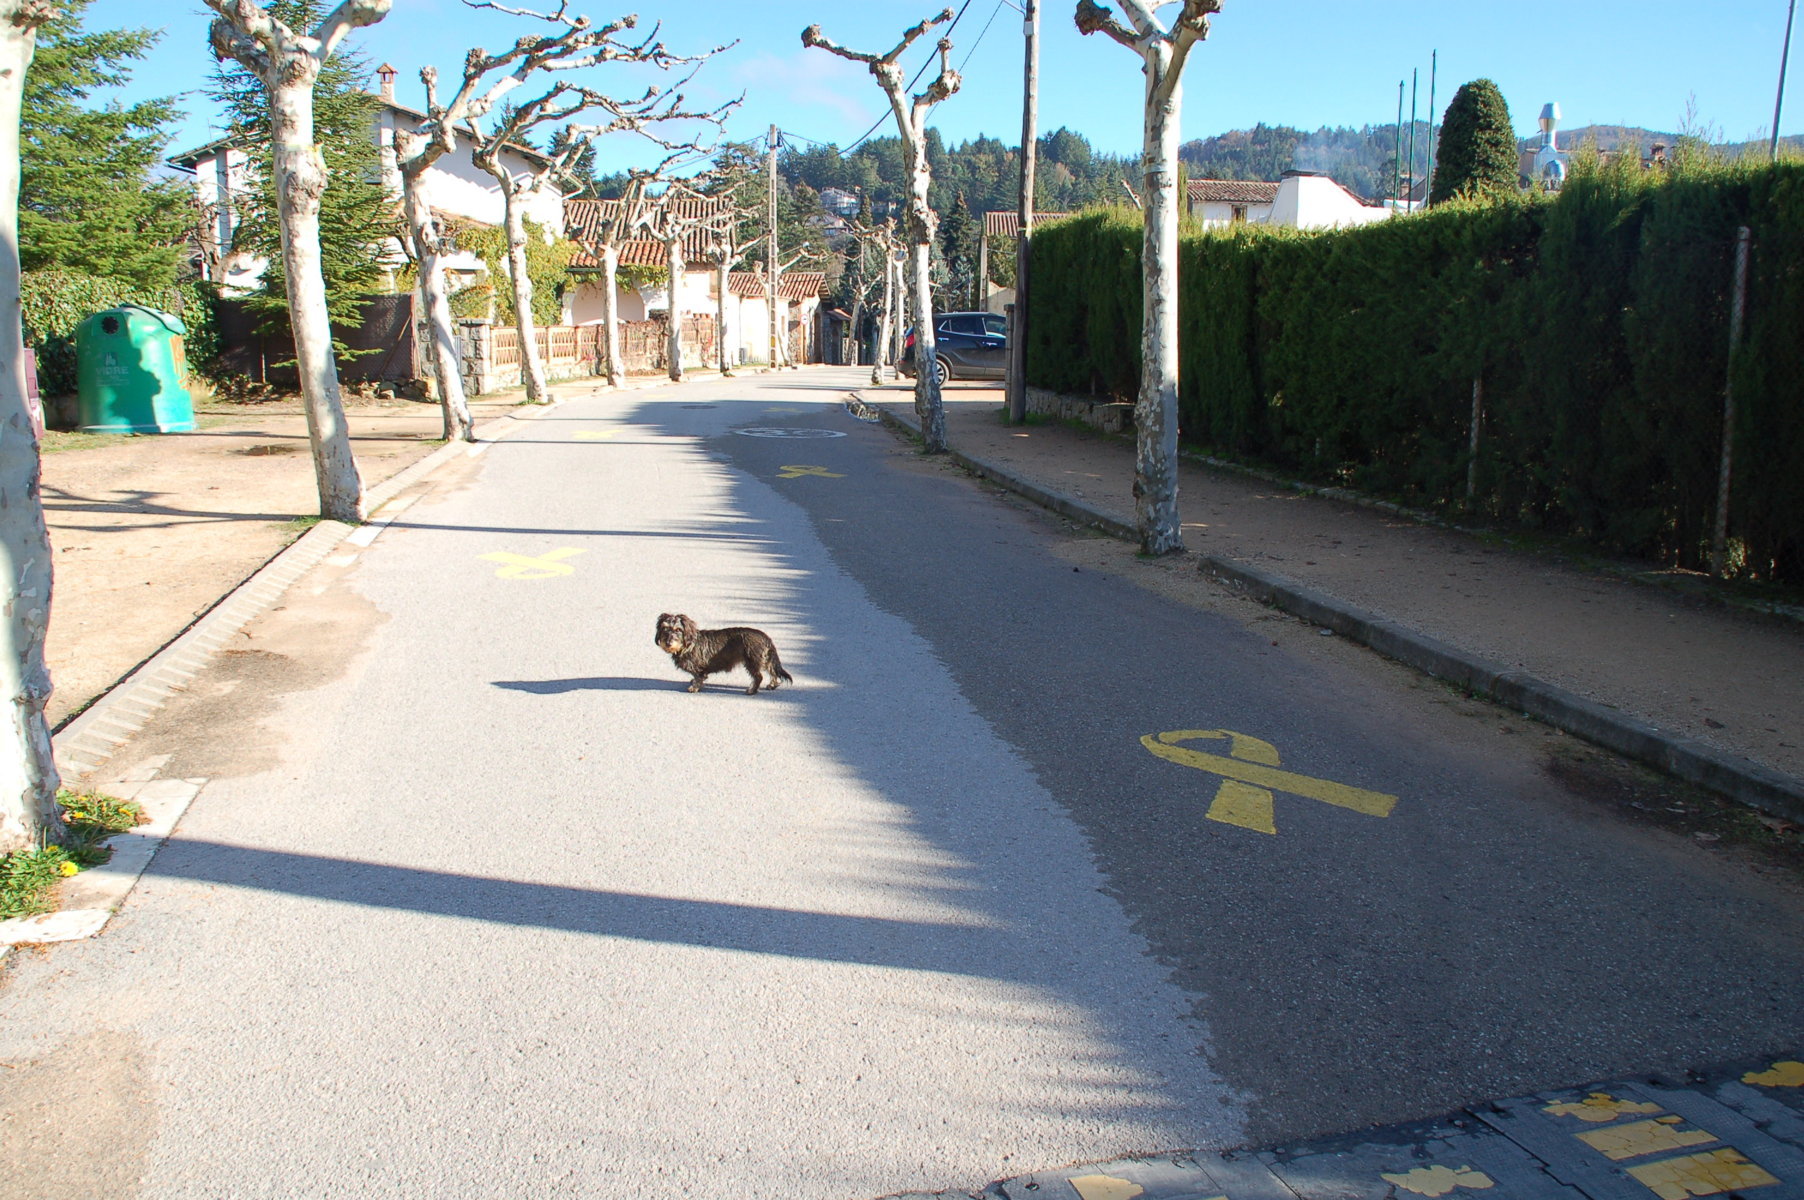 Lotte auf der Straße neben einer gelben Schleife, die auf die Straße gemalt ist